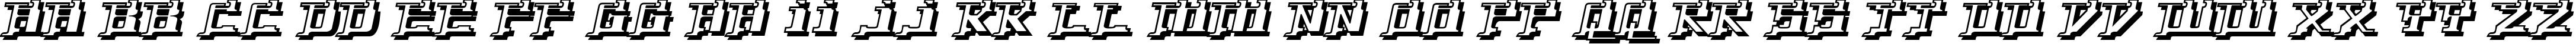 Пример написания английского алфавита шрифтом Yytrium Dioxide